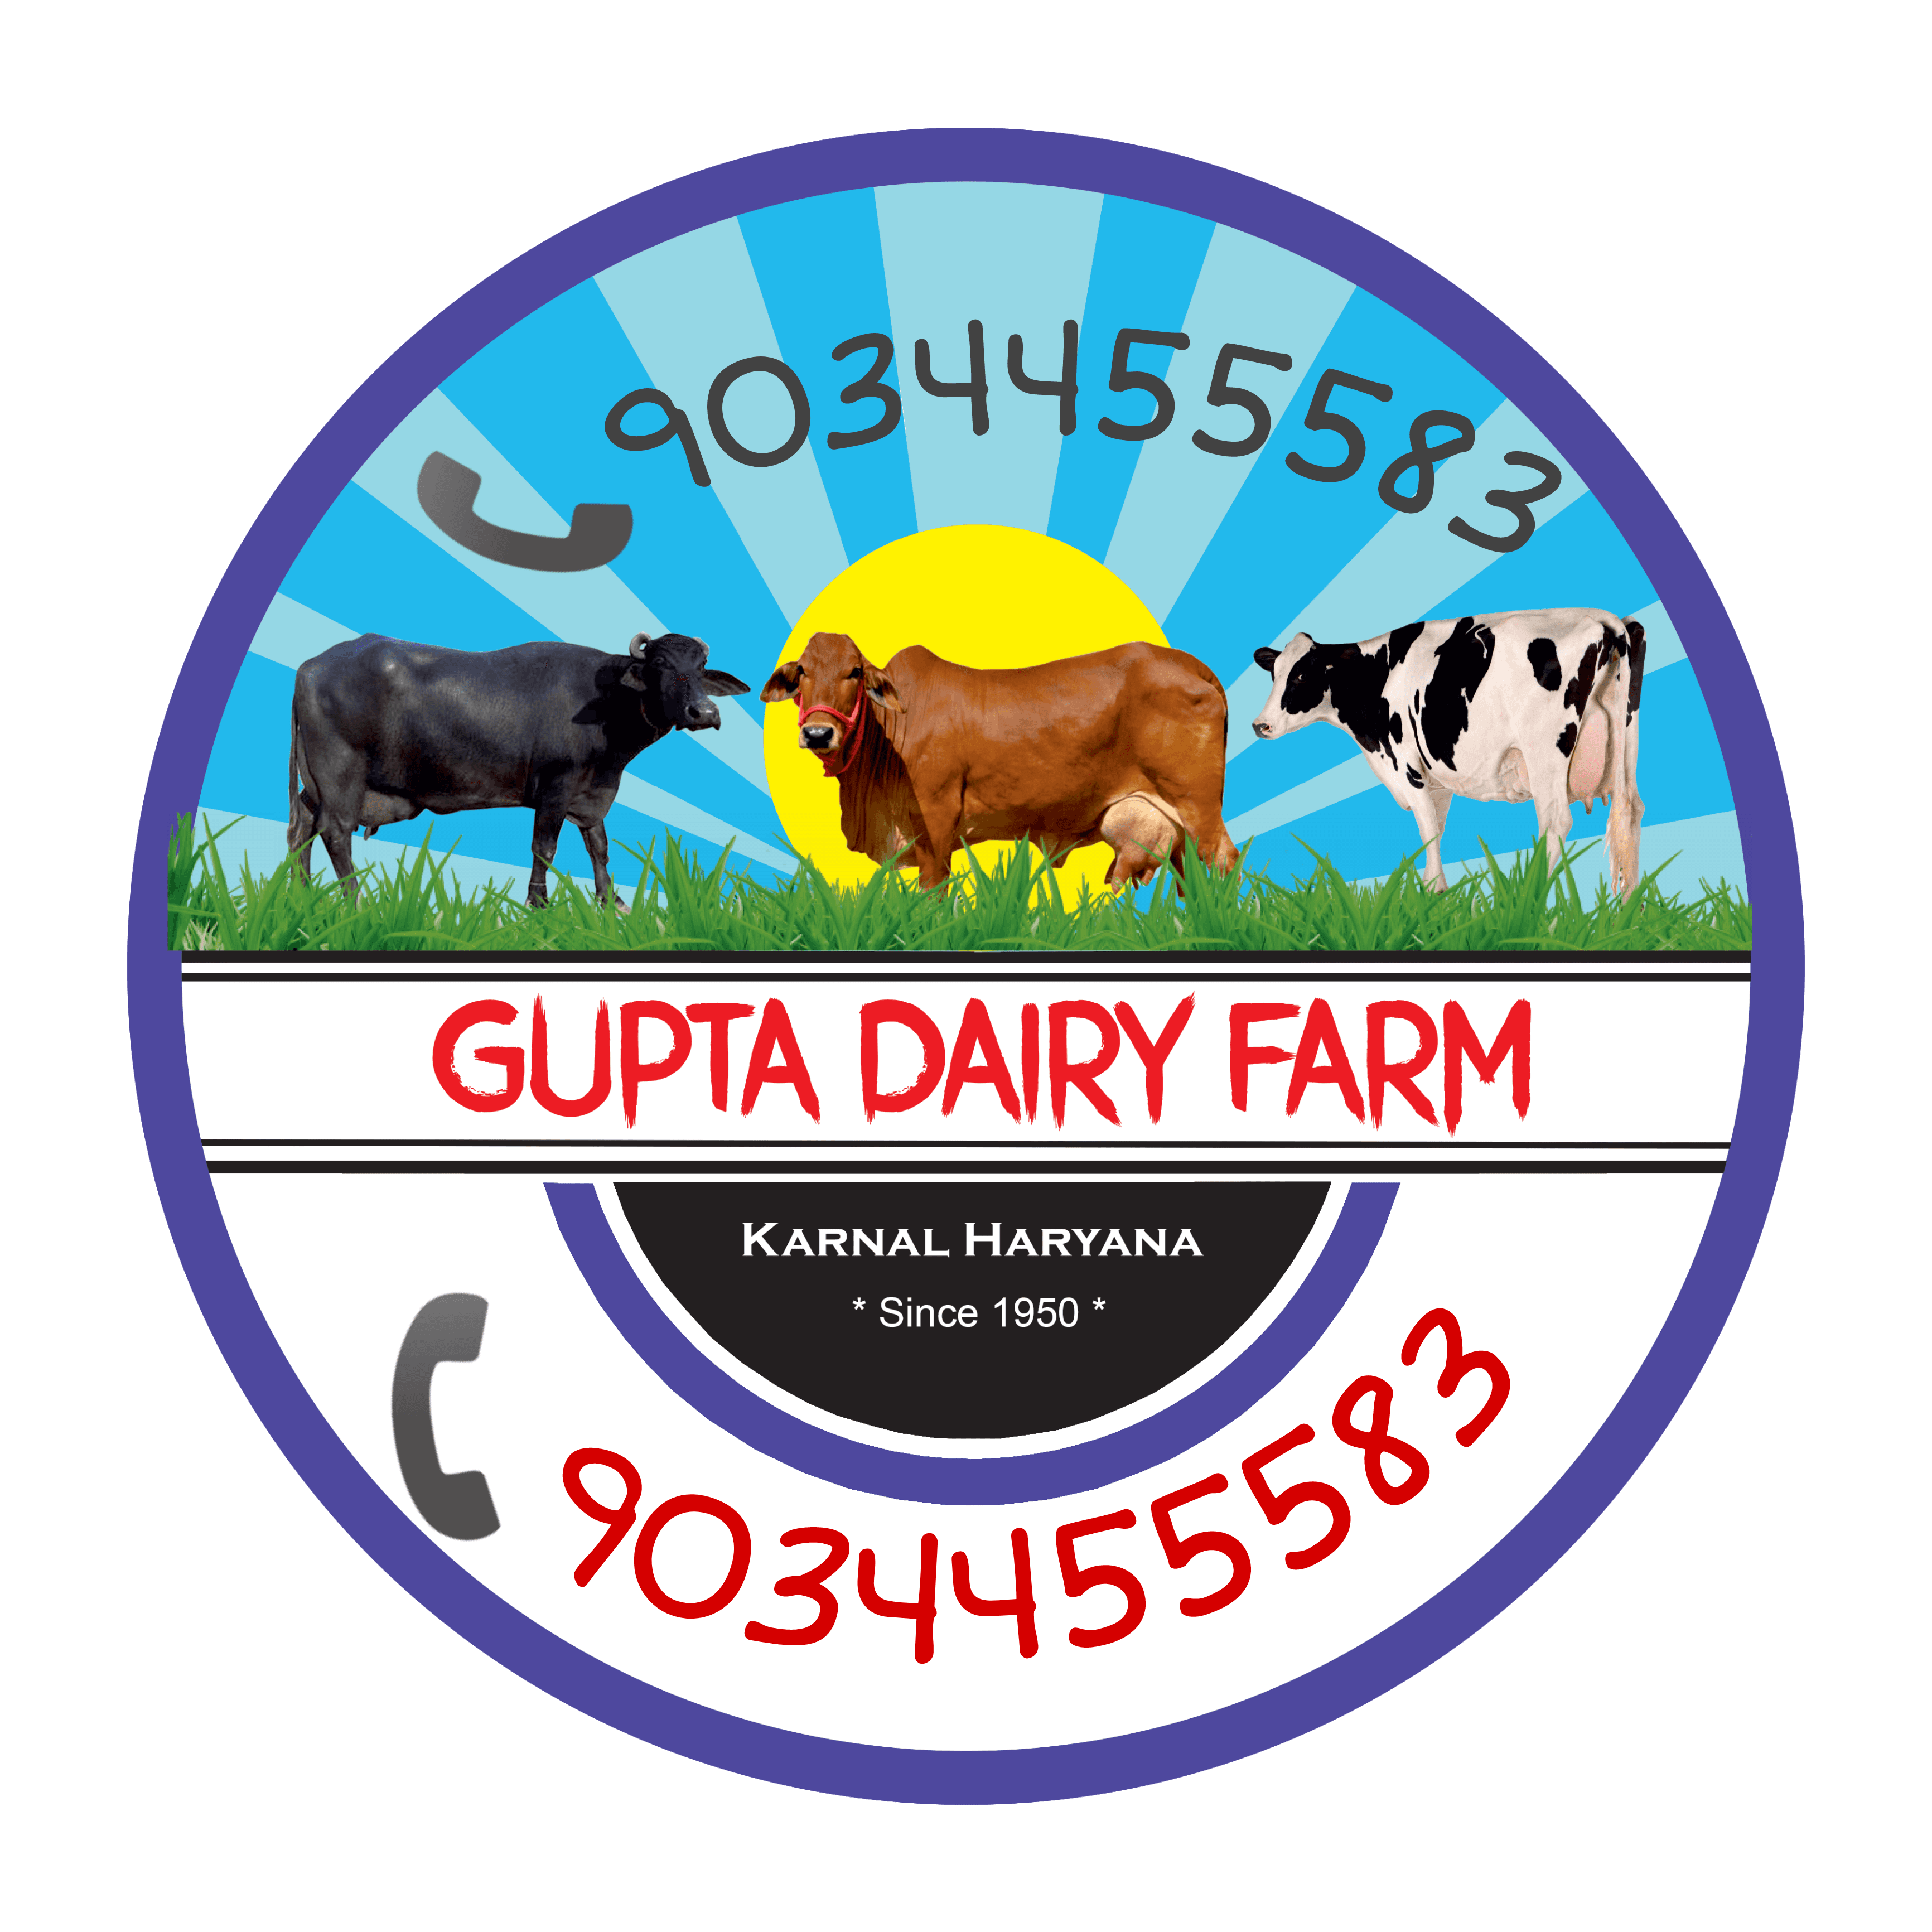 HARSHIT GUPTA DAIRY FARM